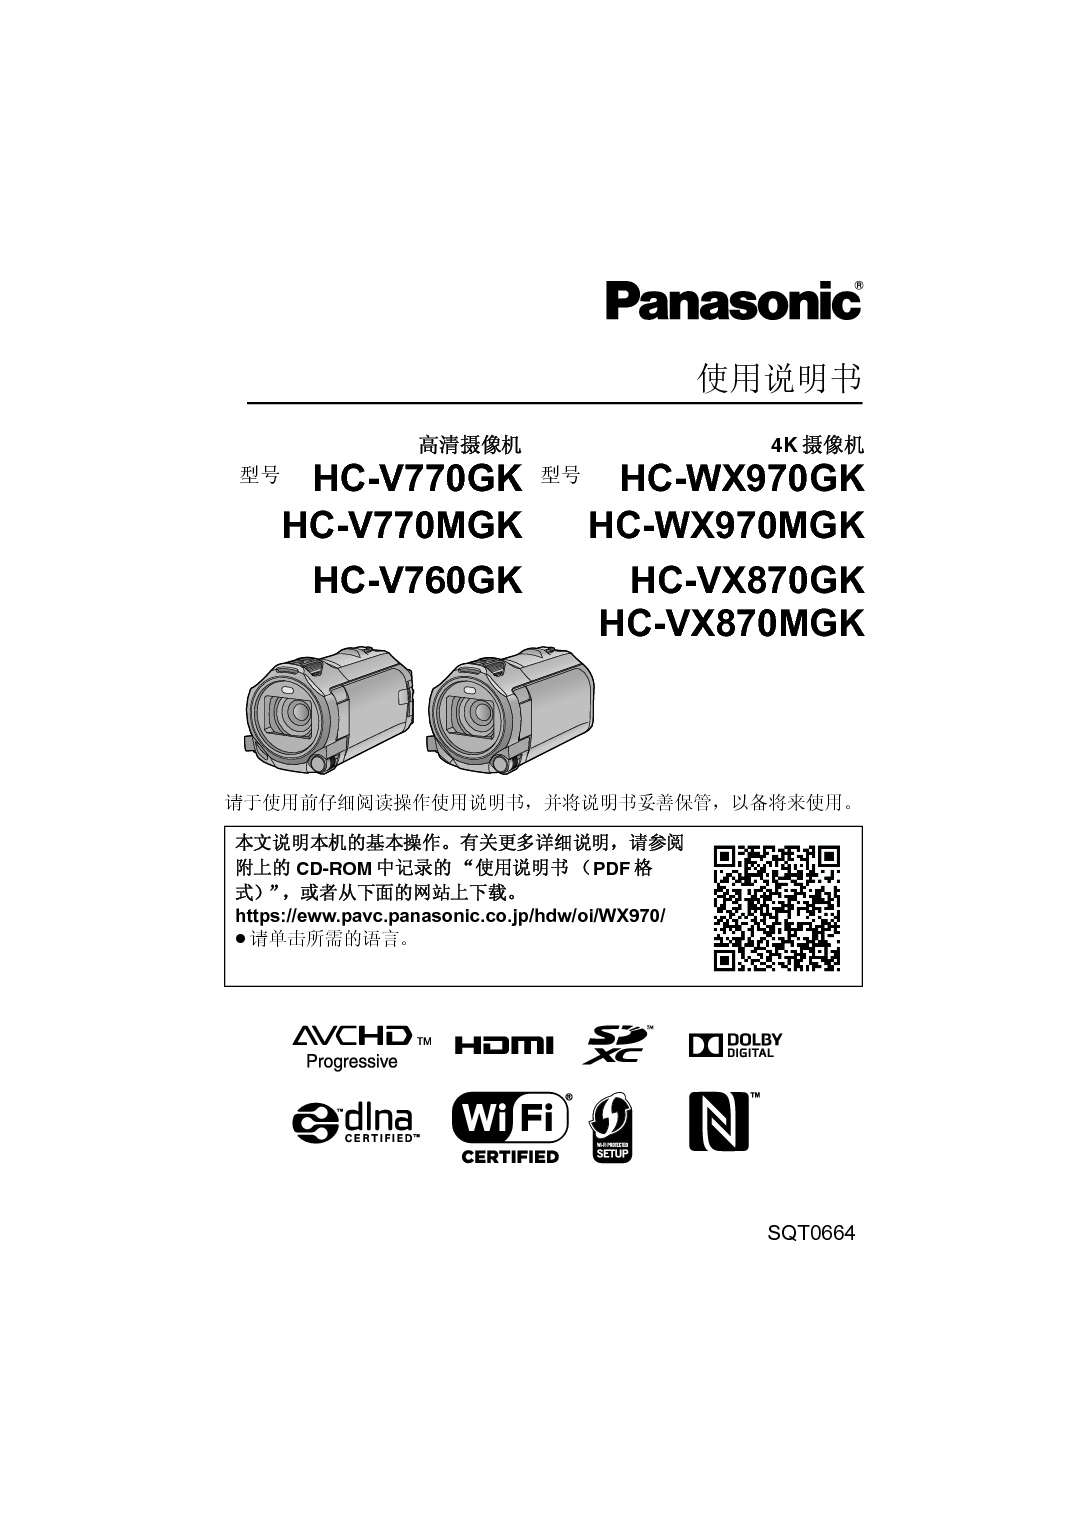 松下 Panasonic HC-V760GK 使用说明书 封面